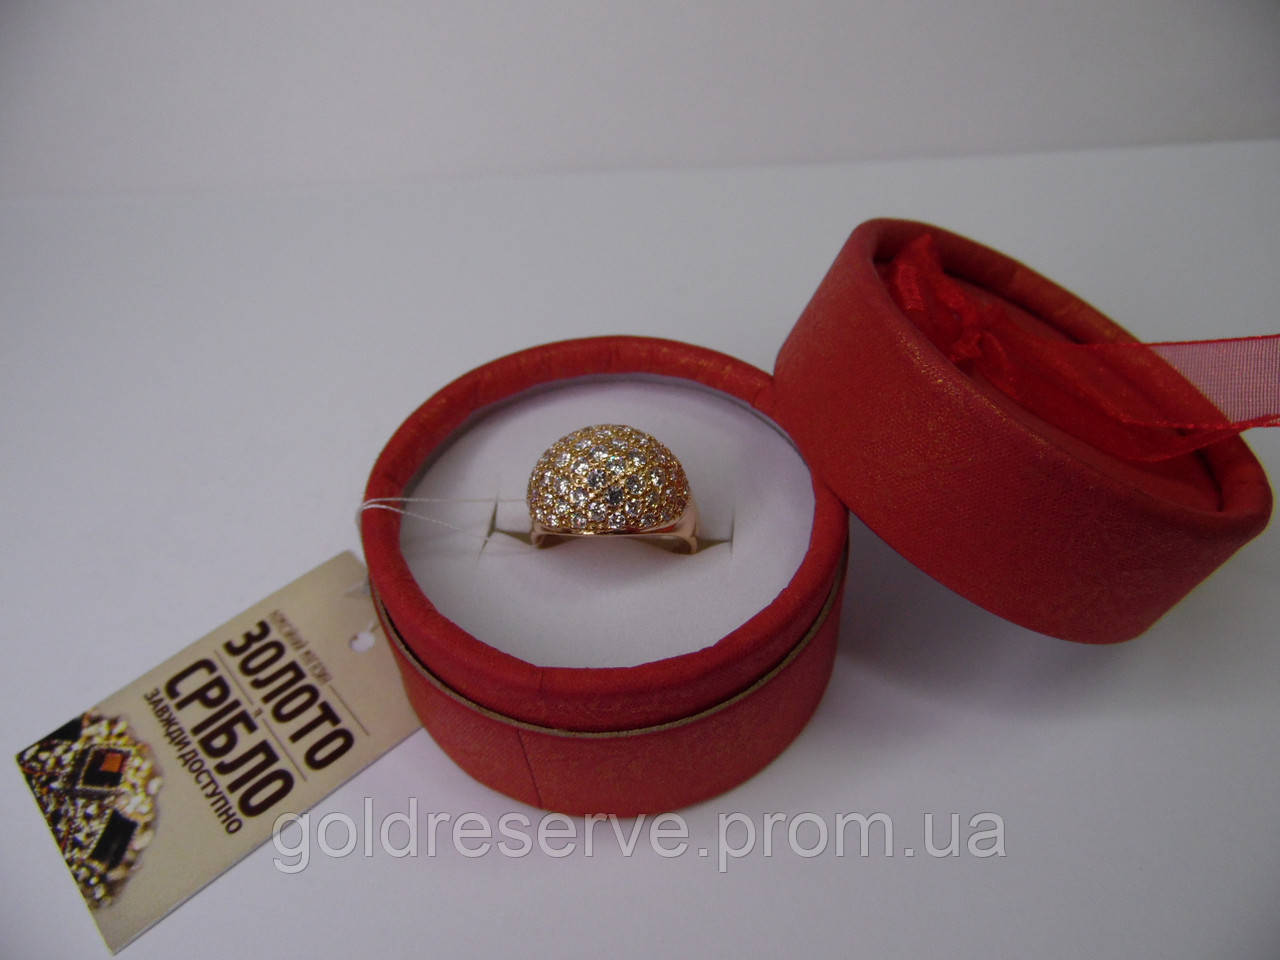 Золотое женское кольцо. Размер 16,5